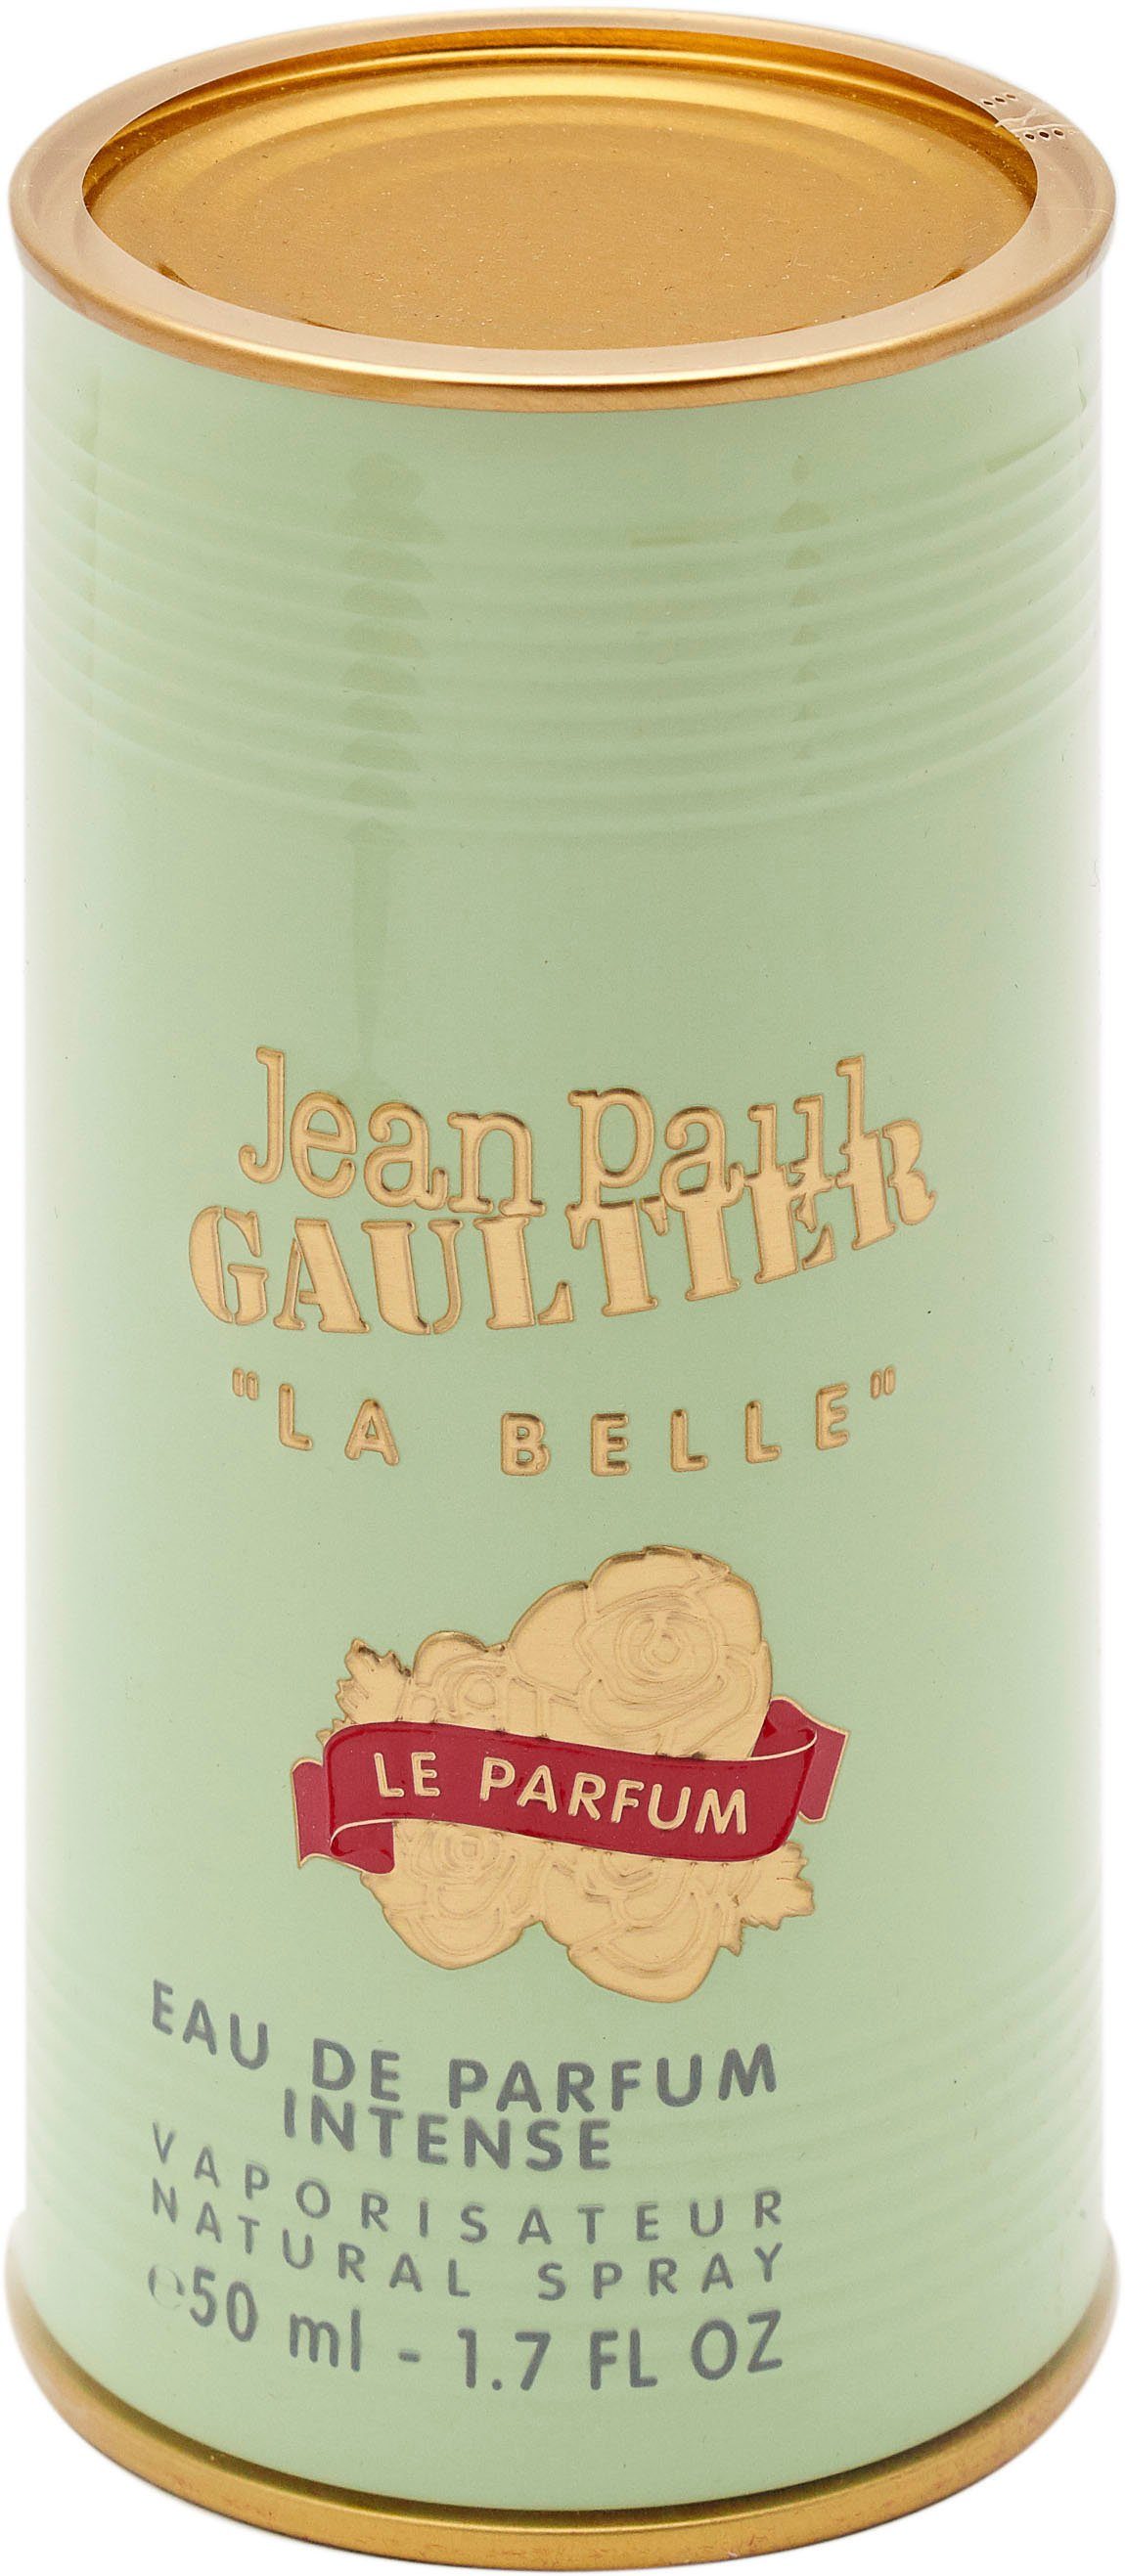 JEAN PAUL GAULTIER Parfum le de Eau La Parfum Belle